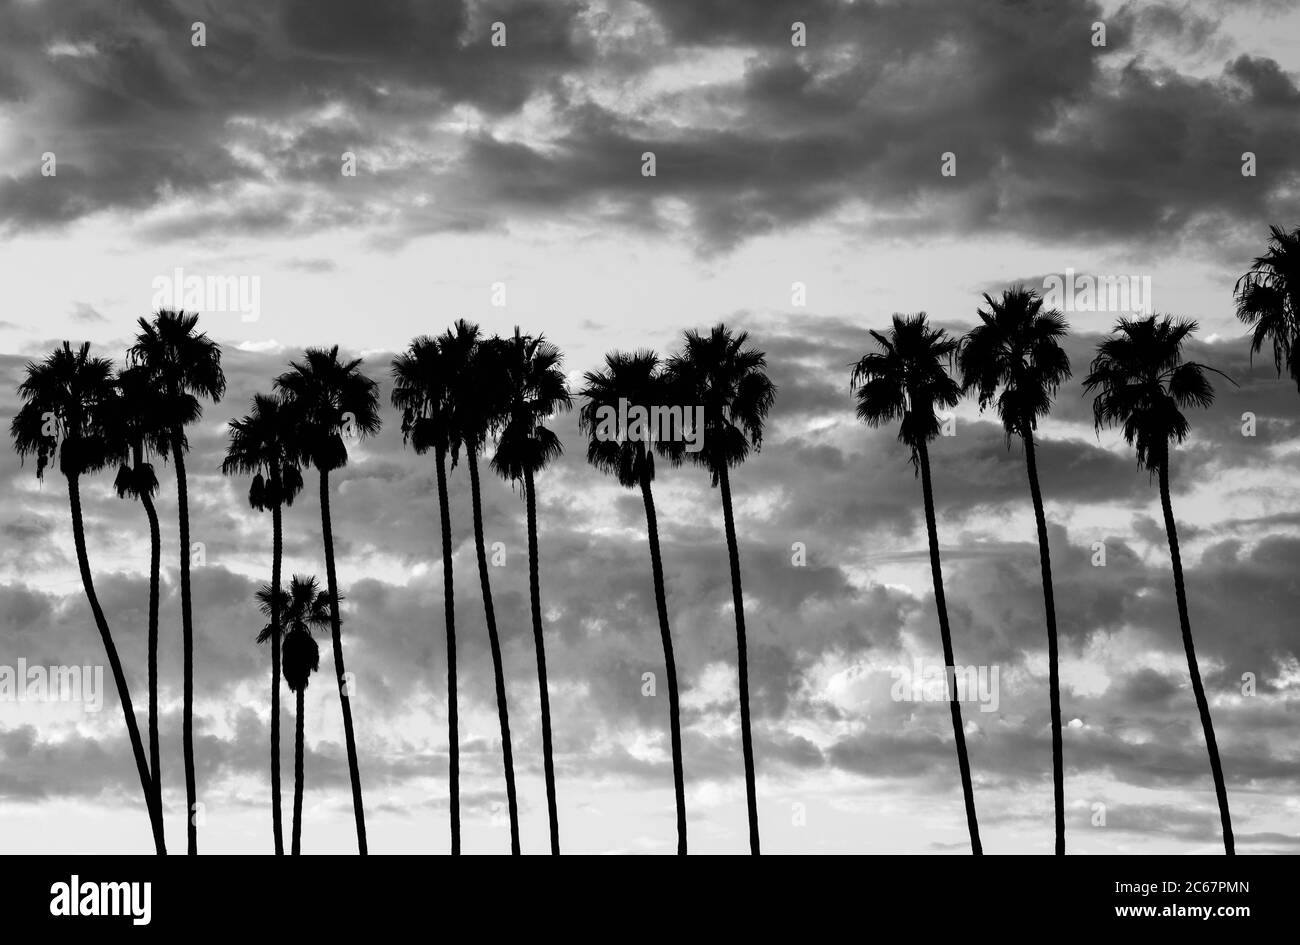 Palmiers contre ciel nuageux, Santa Barbara, Californie, États-Unis Banque D'Images